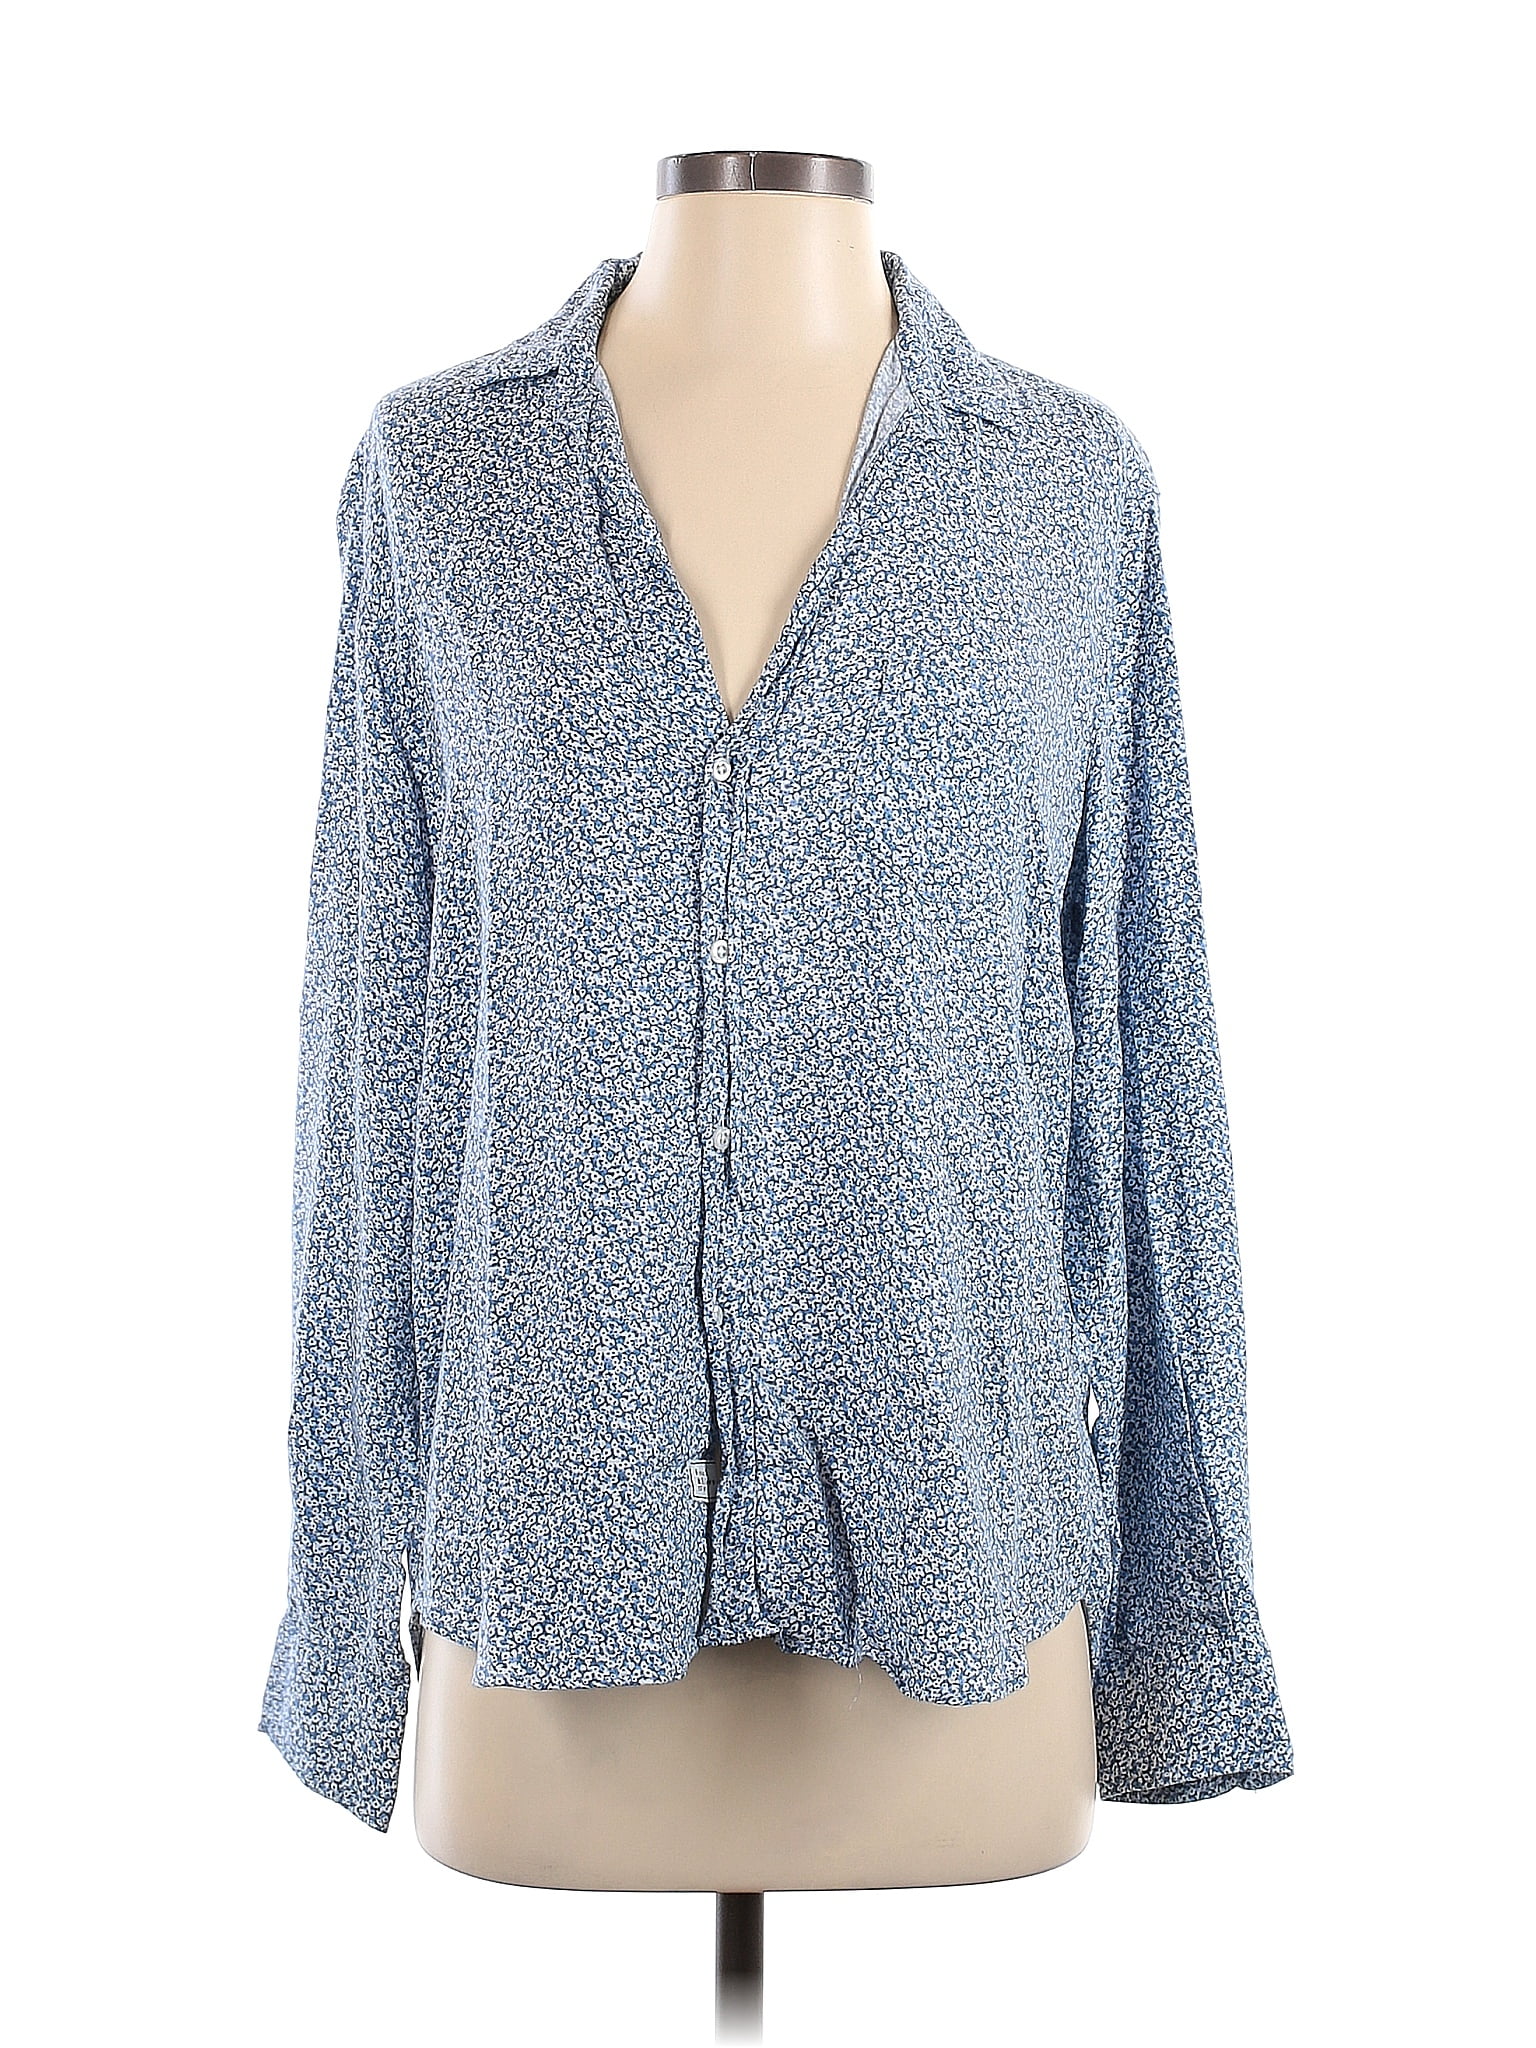 Frank & Eileen 100% Modal Floral Blue Long Sleeve Button-Down Shirt ...